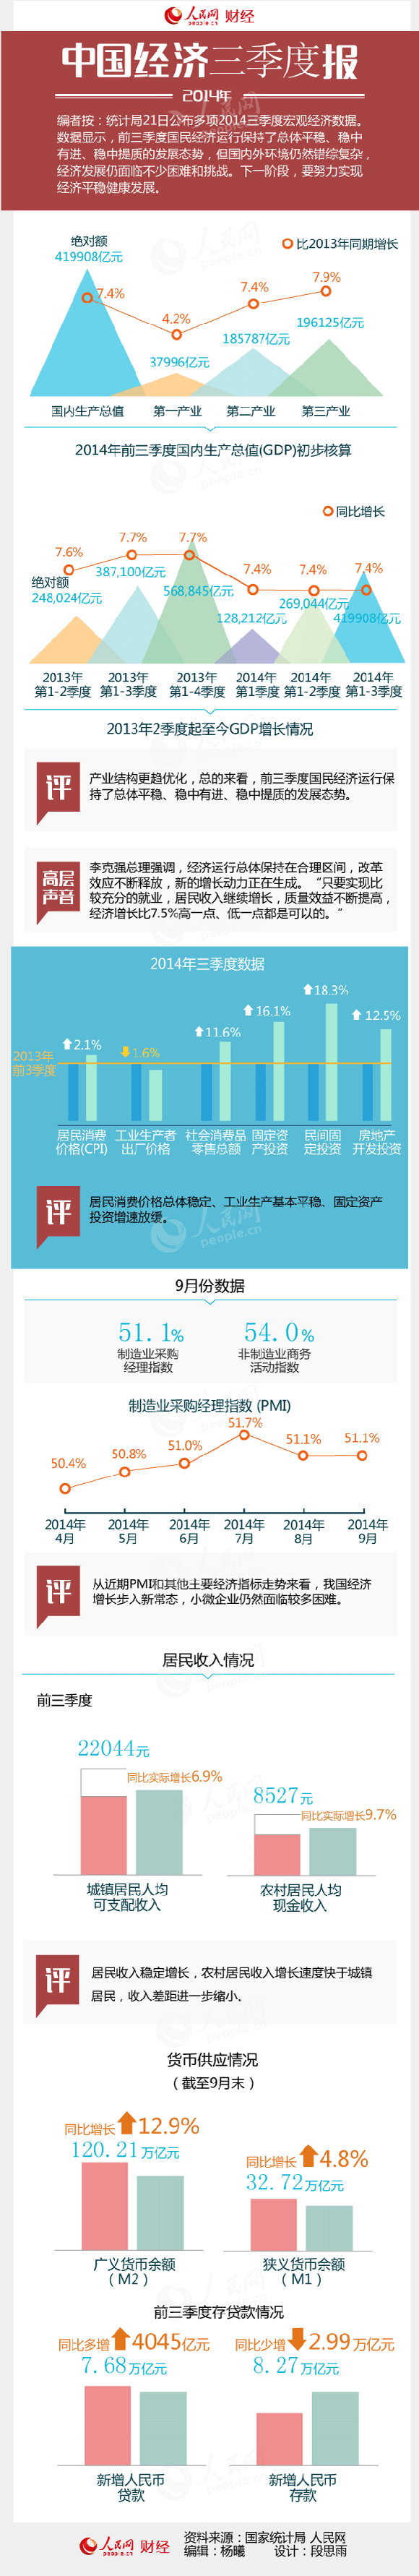 一张图读懂三季度中国宏观经济数据。